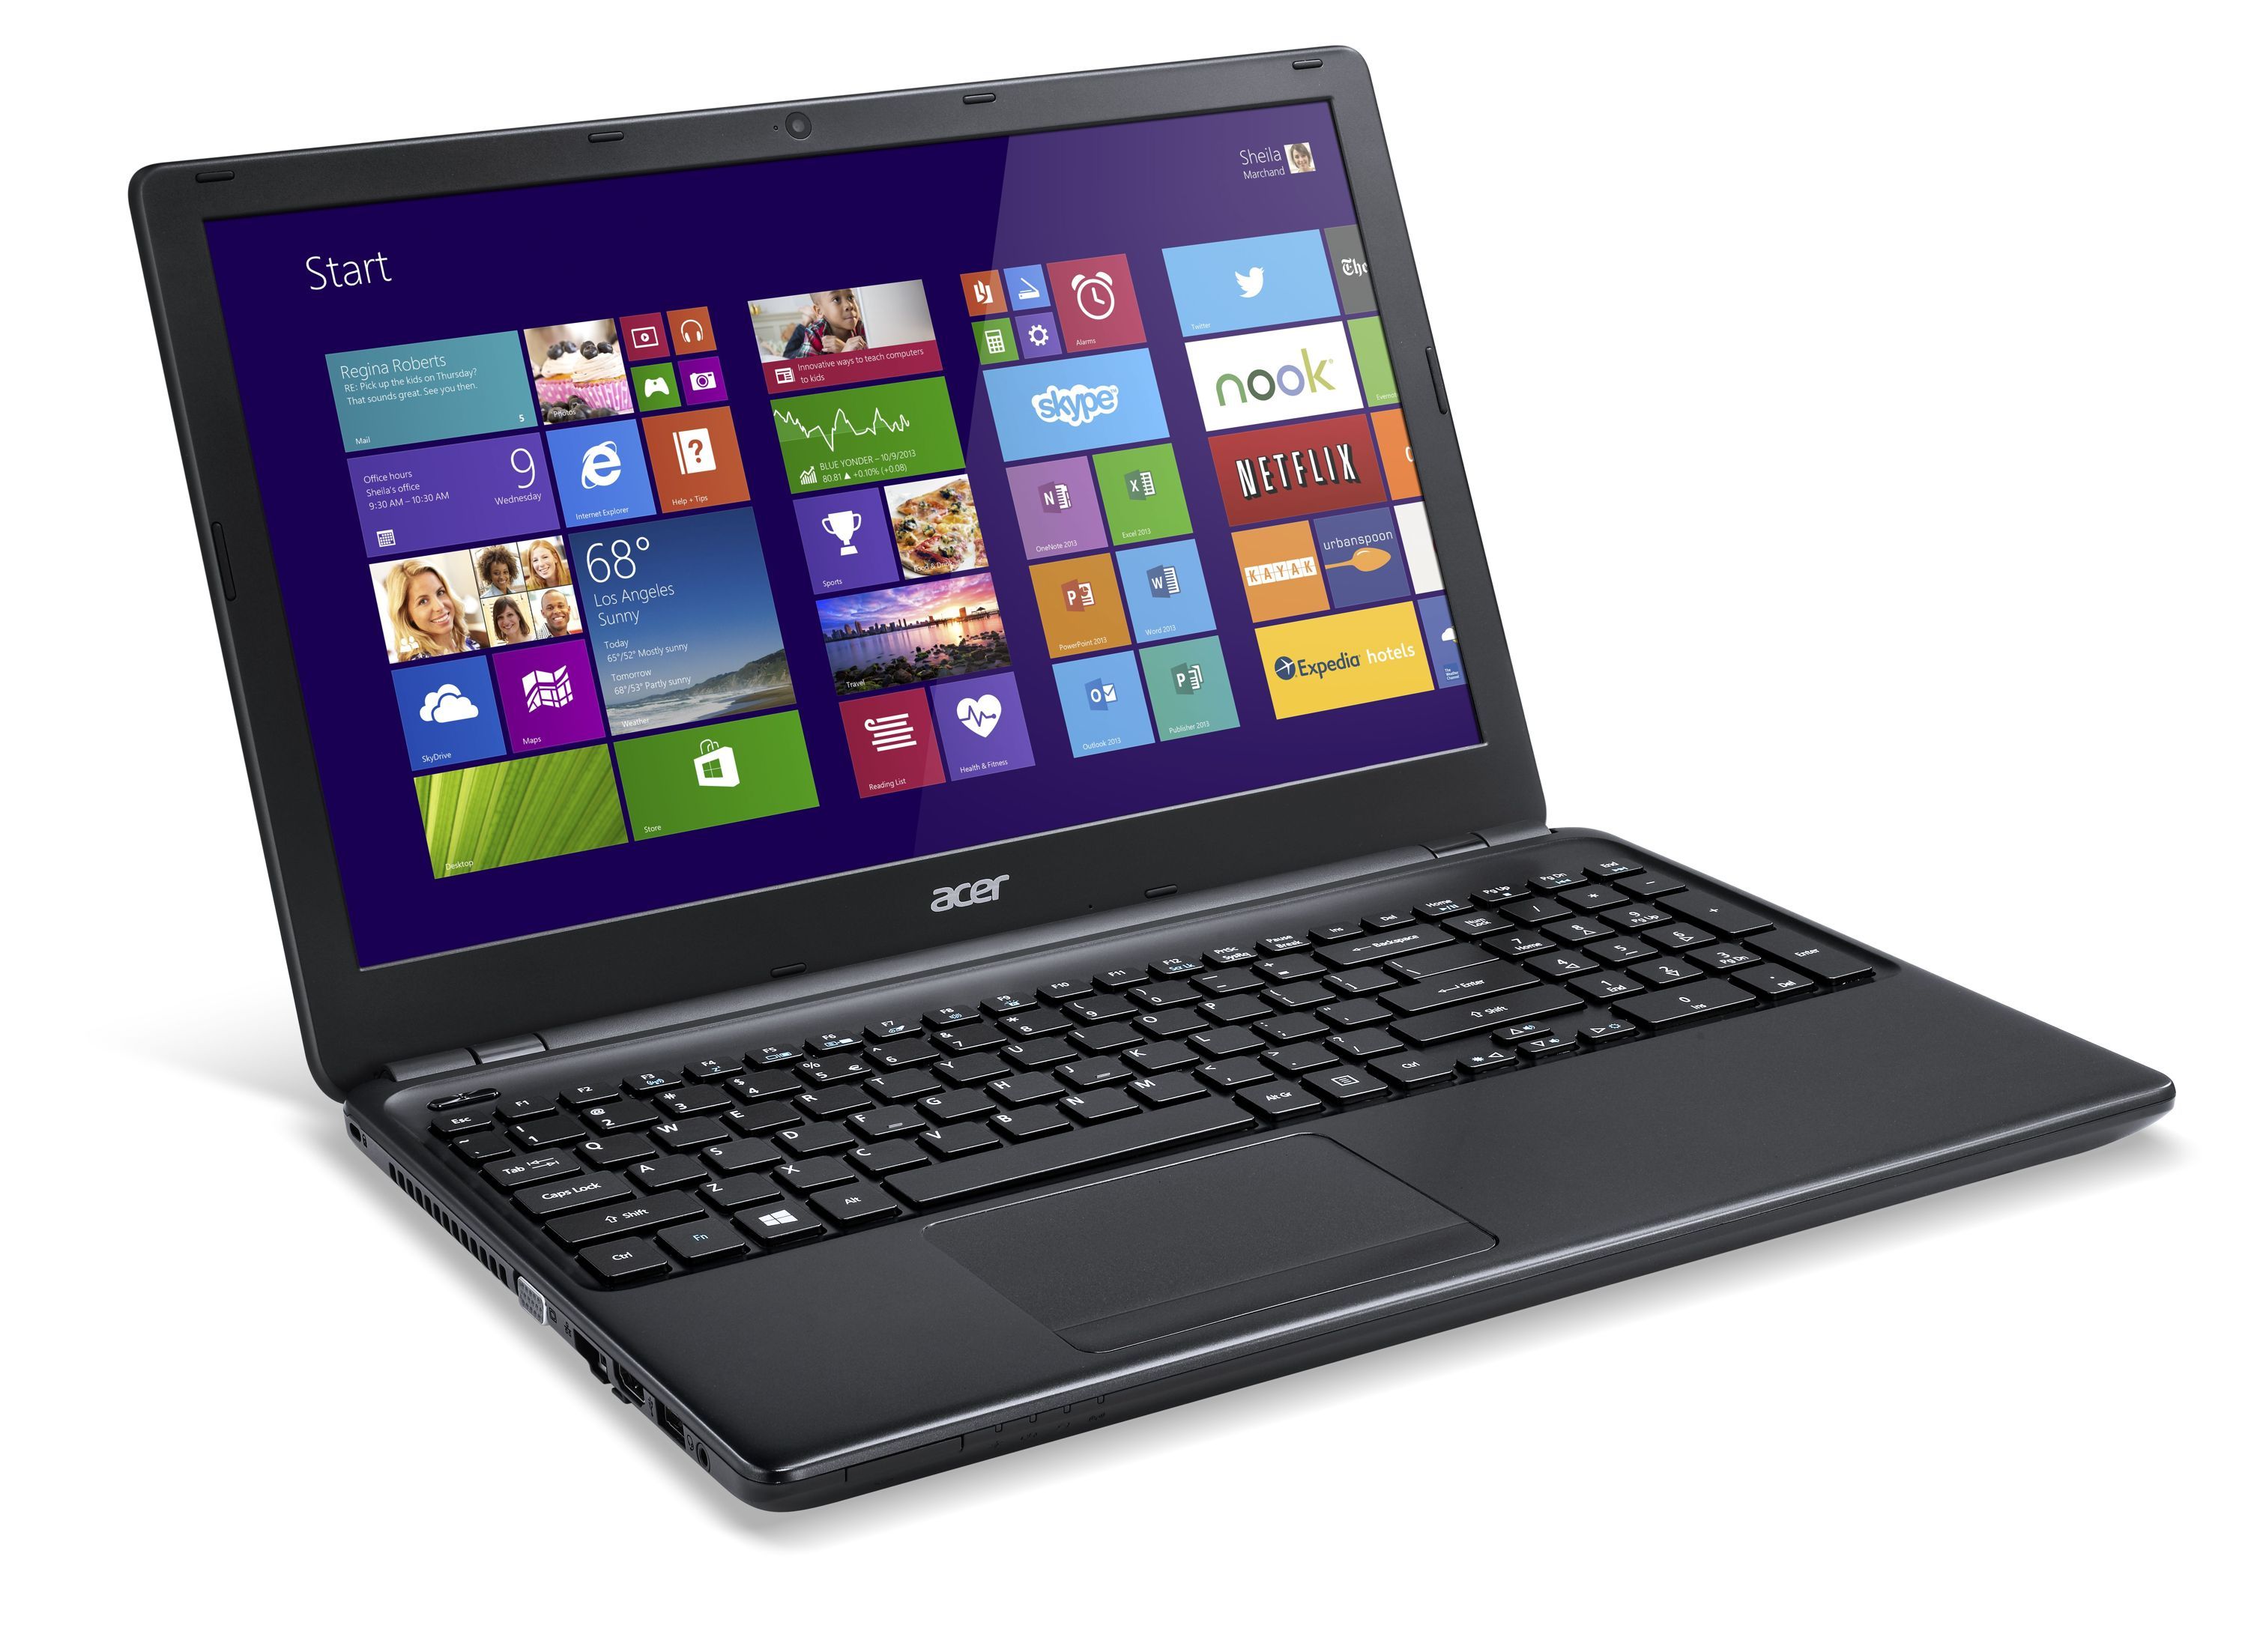 Acer Aspire E1 15,6" Intel Celeron 2957U/4 GB/320 GB/Windows 8.1 64-bit